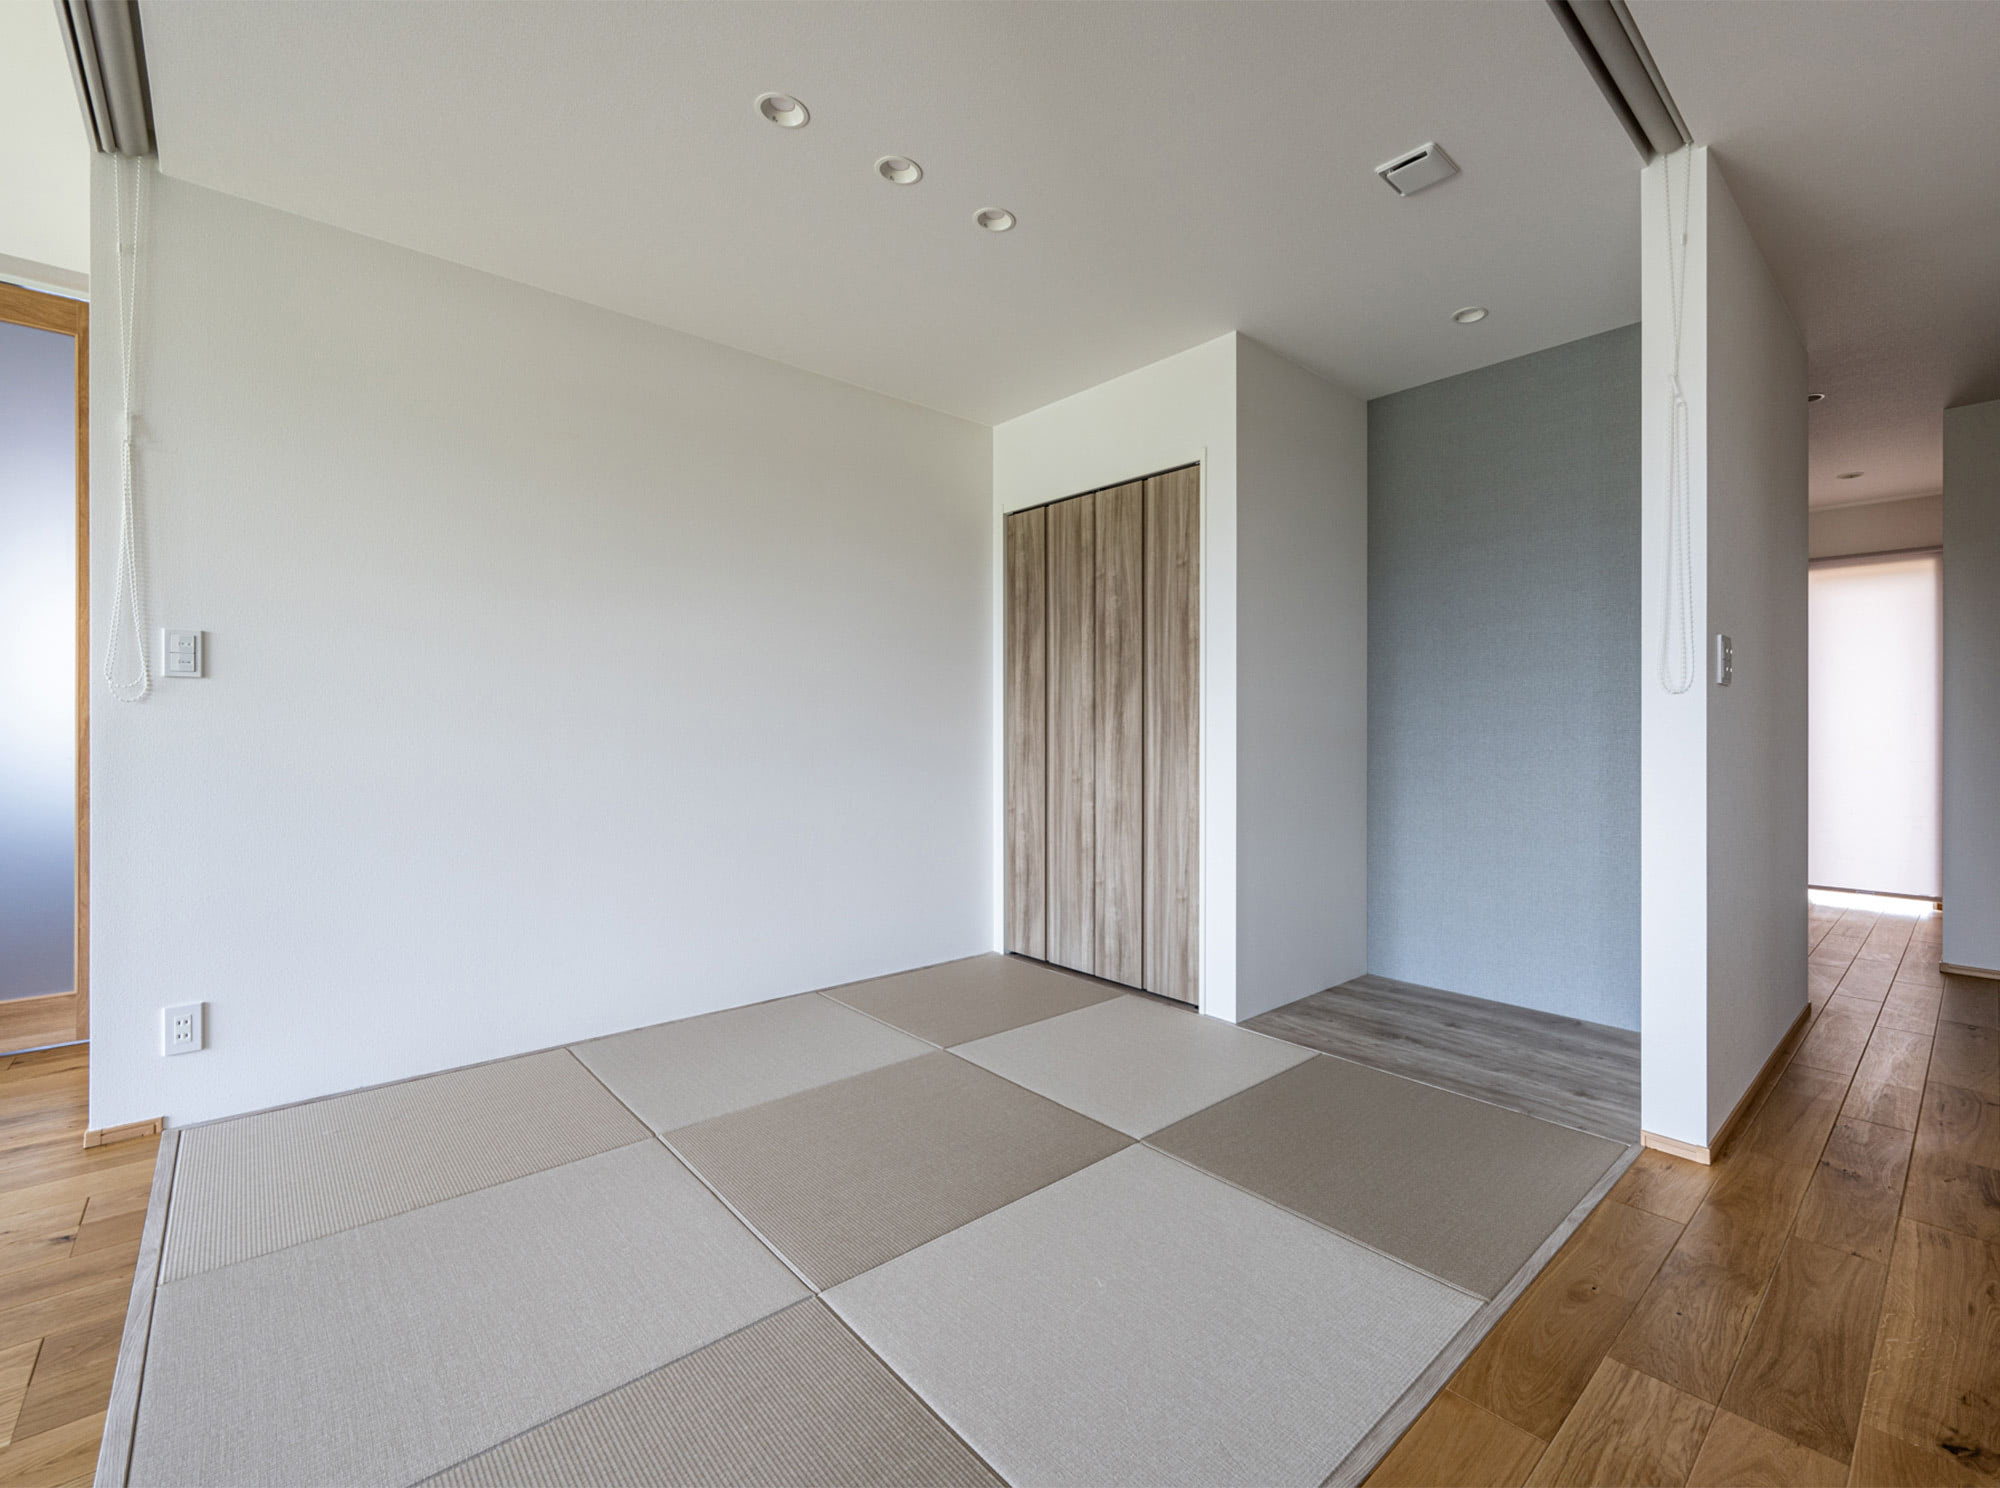 LDKの一角にある和室は、ロールカーテンで仕切って独立した客室として使うこともできます。